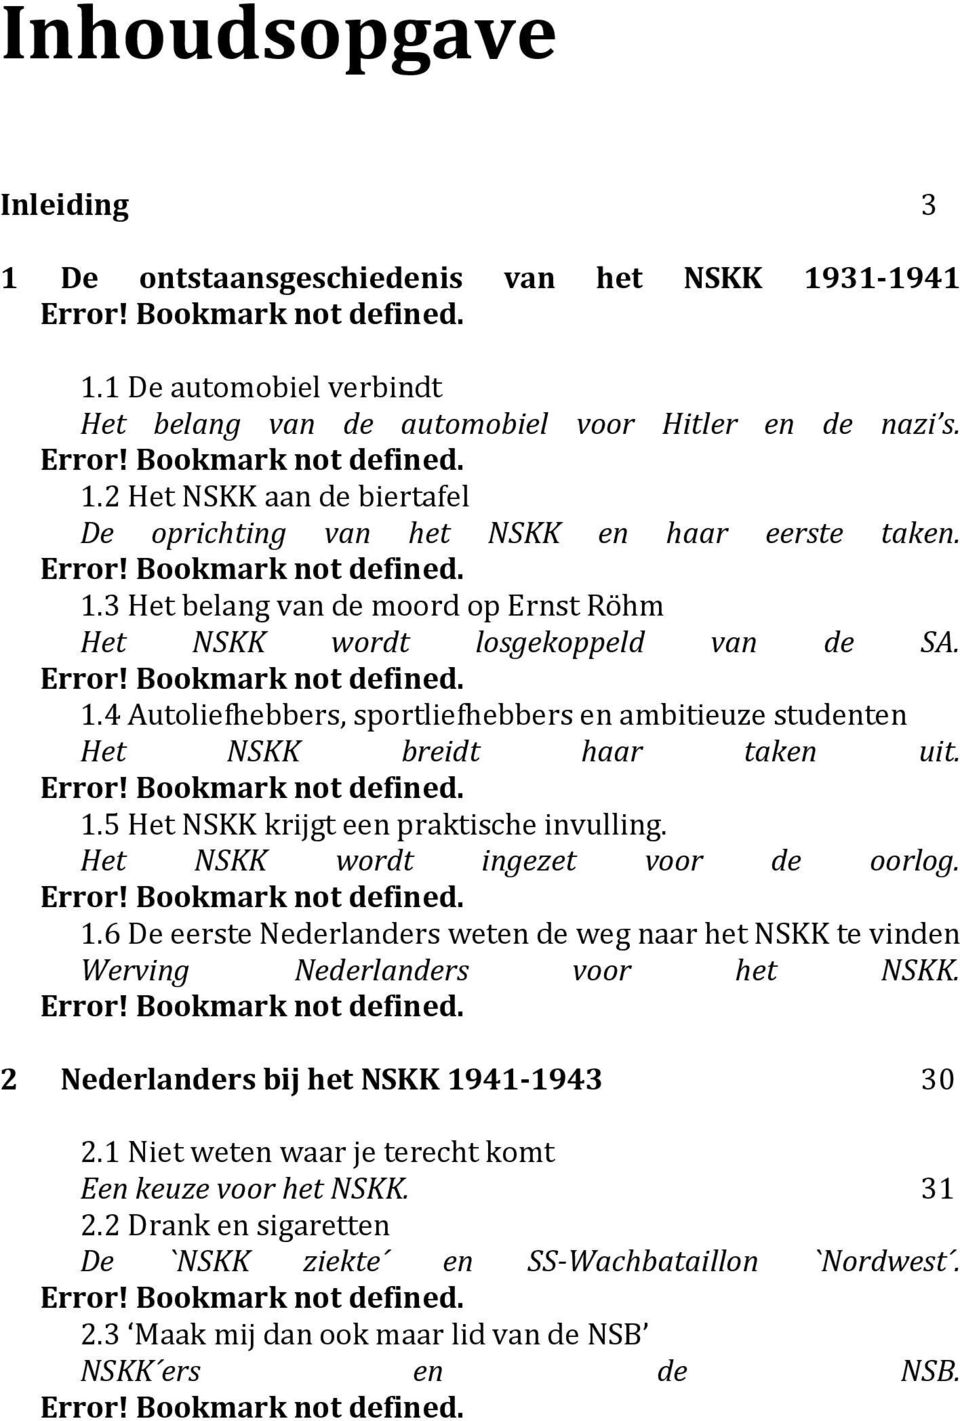 Error! Bookmark not defined. 1.5 Het NSKK krijgt een praktische invulling. Het NSKK wordt ingezet voor de oorlog. Error! Bookmark not defined. 1.6 De eerste Nederlanders weten de weg naar het NSKK te vinden Werving Nederlanders voor het NSKK.